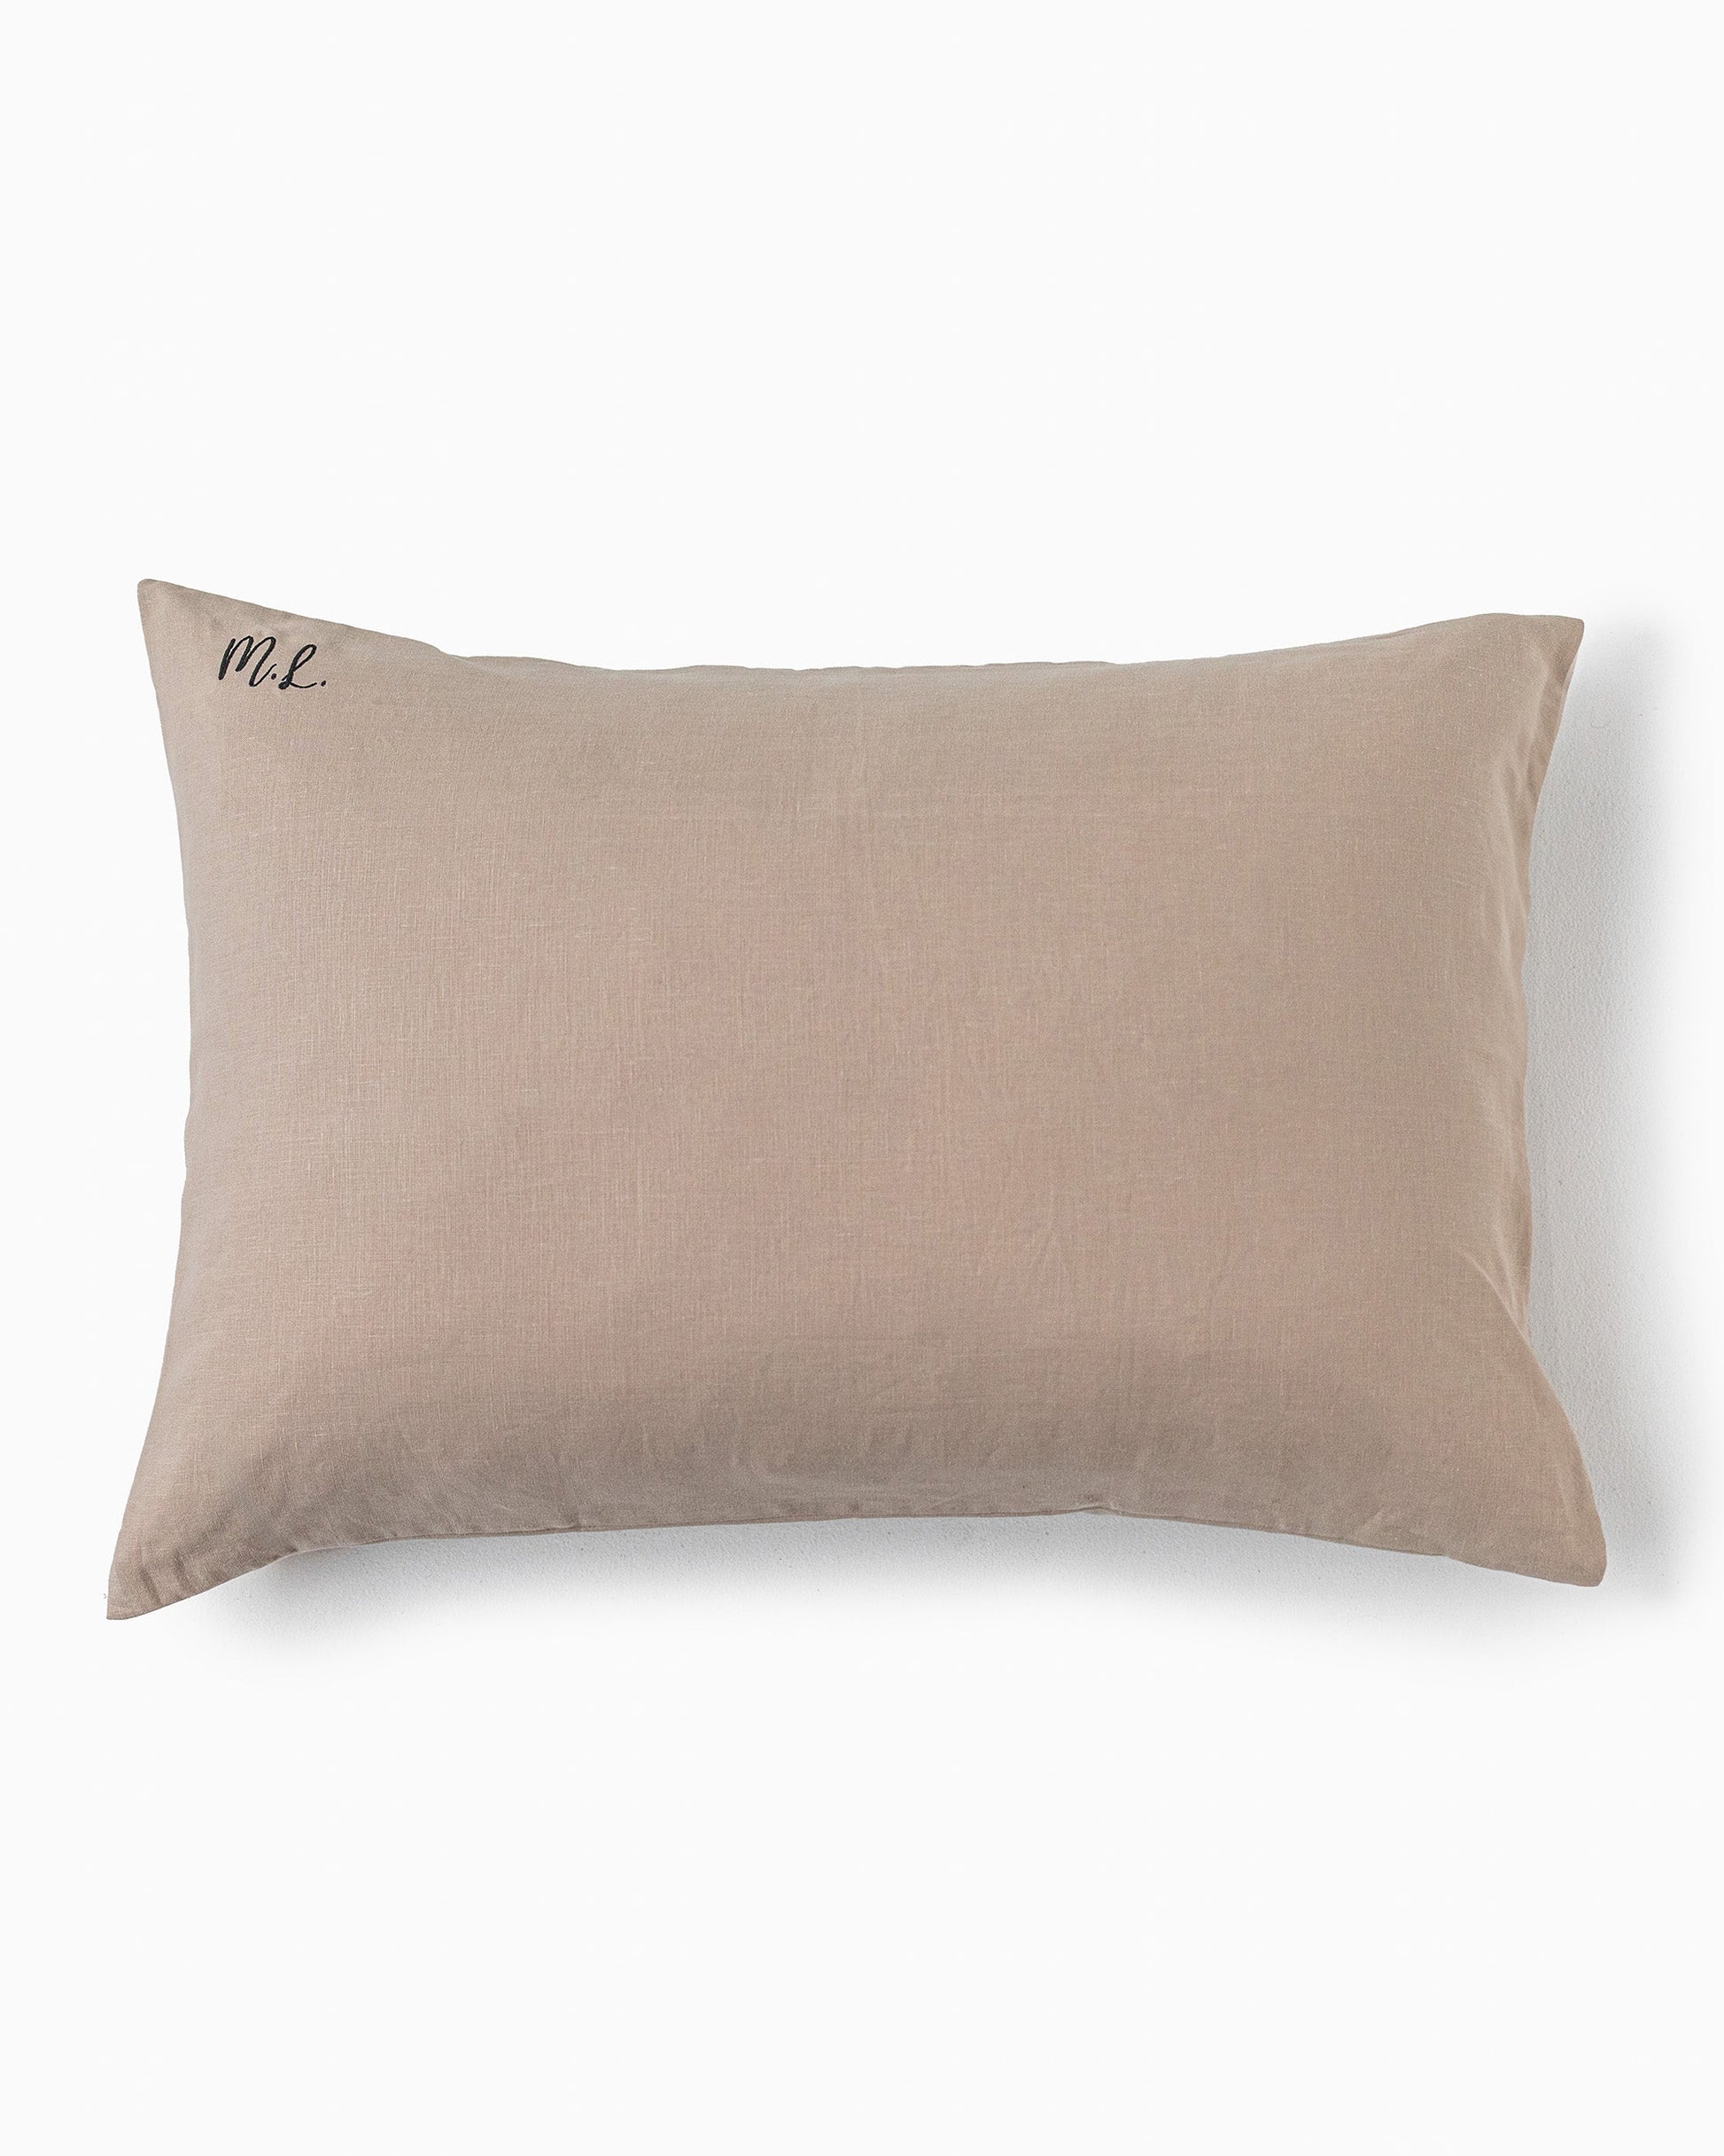 Charcoal gray linen pillowcase - MagicLinen